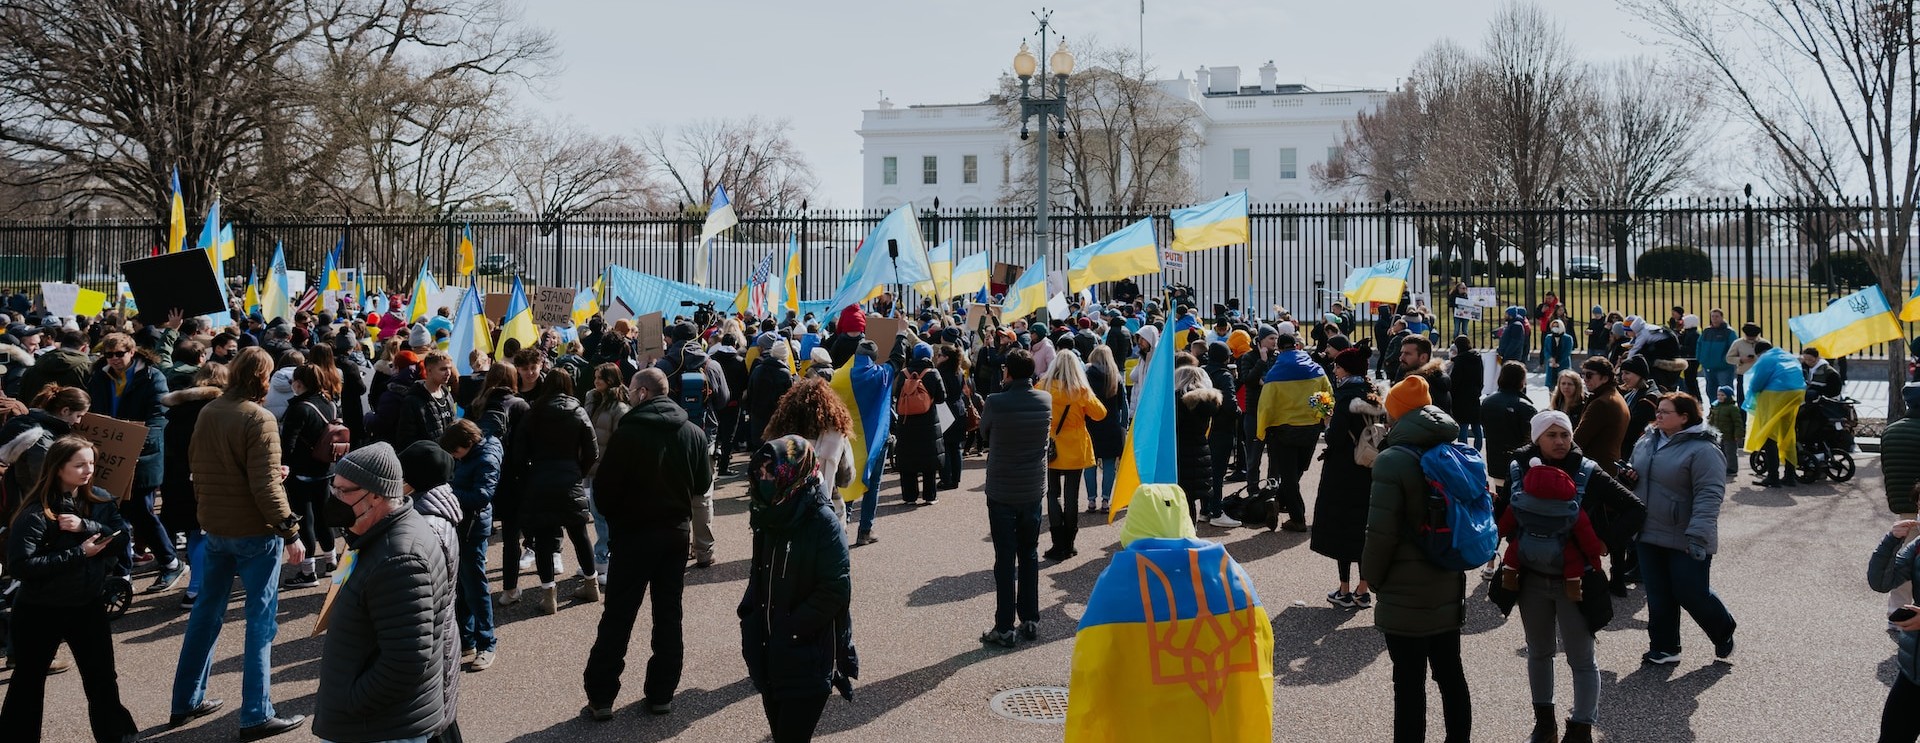 Asylbewerber aus der Ukraine und Afghanistan belasten geringes Wohnungsangebot